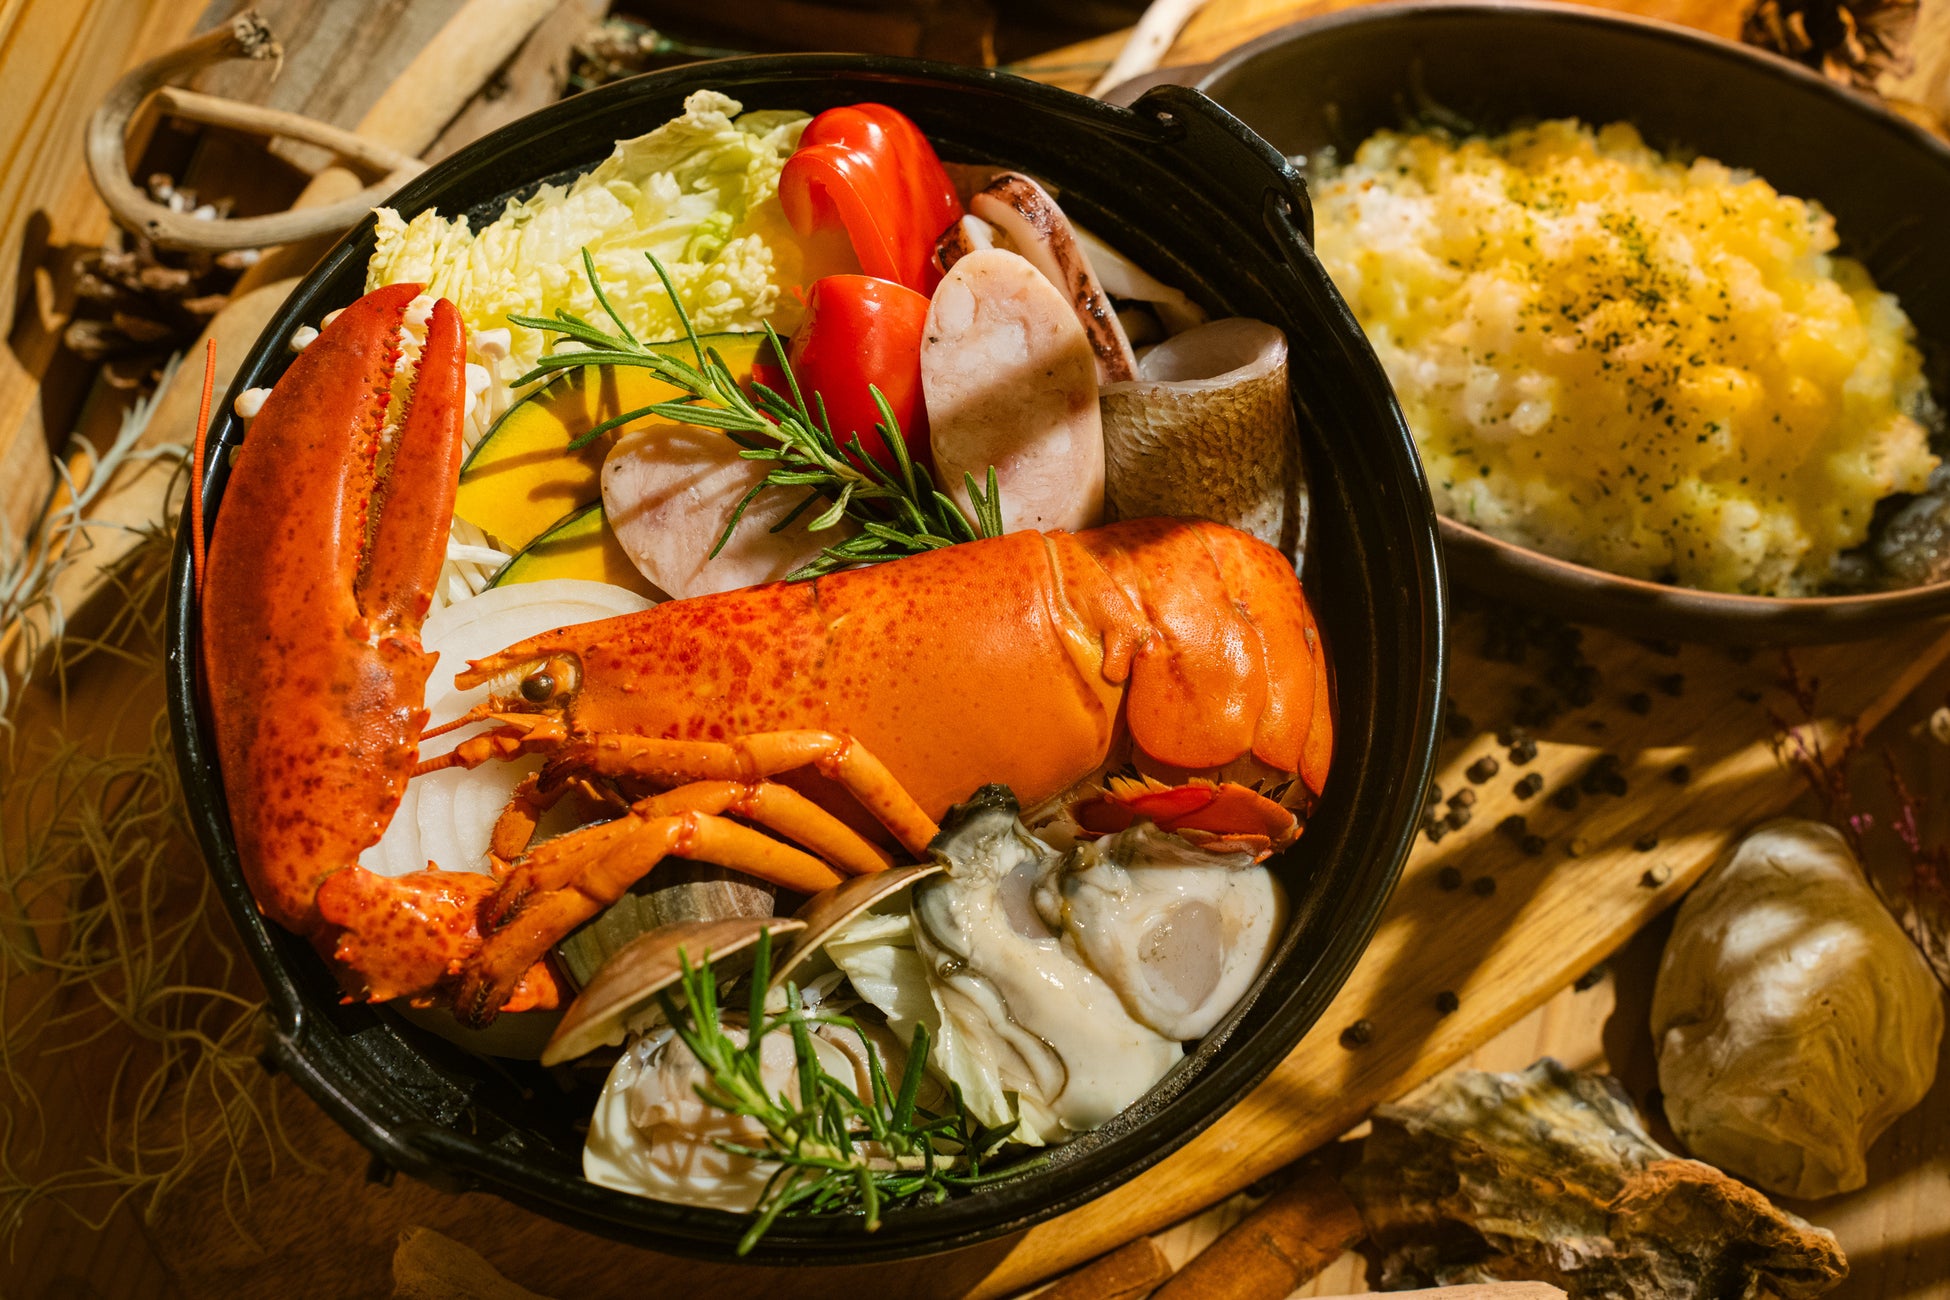 オマール海老をメインにと牡蠣、蛤、鯛などの海鮮の旨味が詰まったブイヤベース鍋のコース